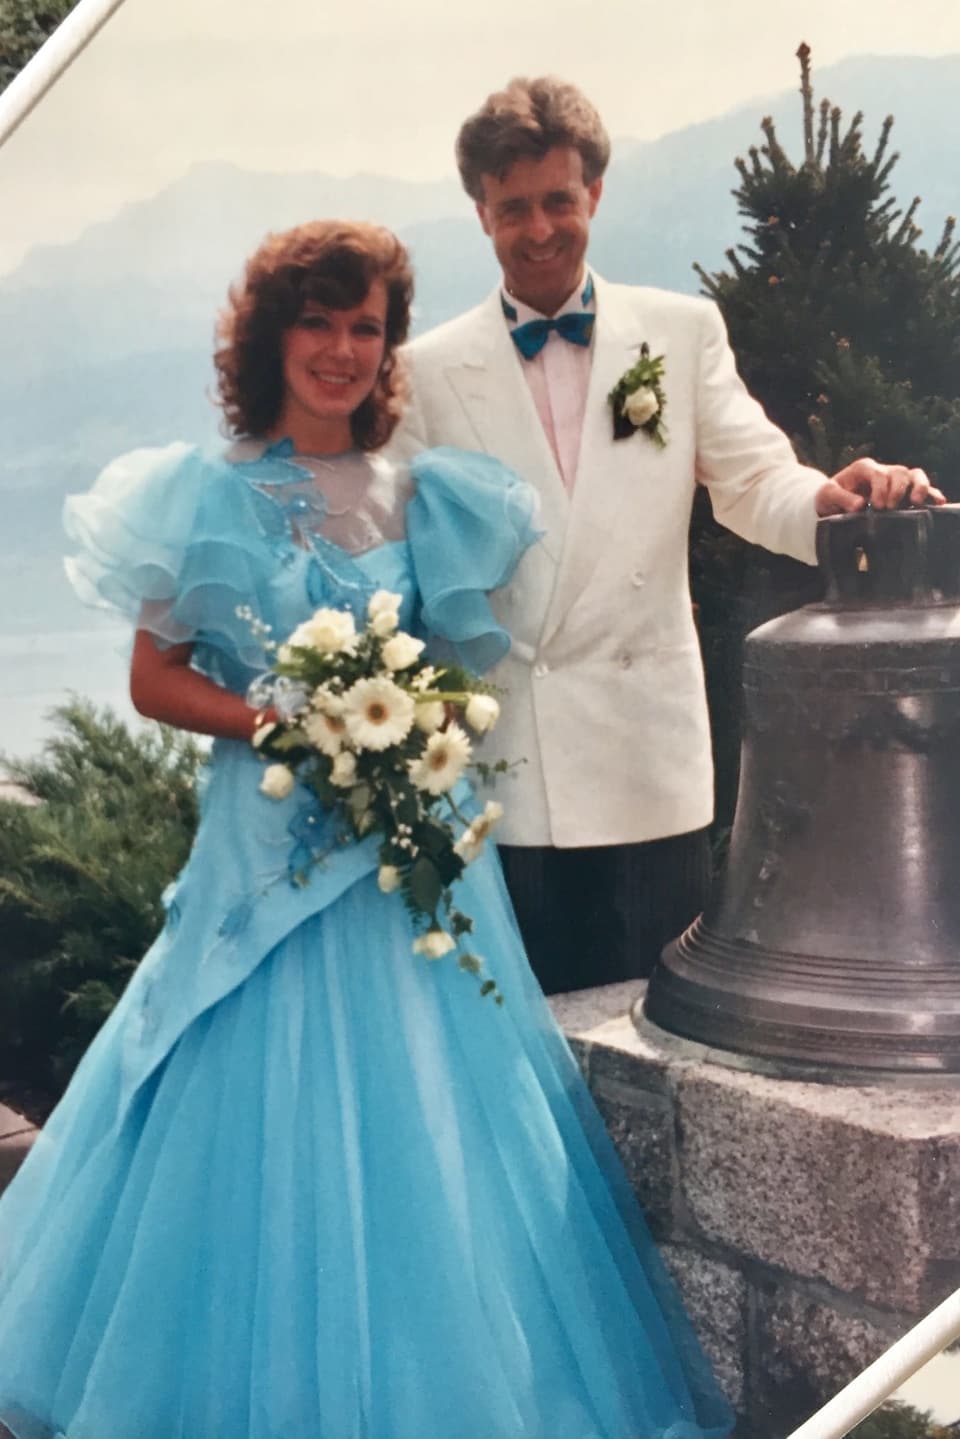 Ein Brautpaar, sie in einem hellblauen Kleid und er im weissen Blazer, stehen bei einer Glocke und lächeln in die Kamera. Im Hintergrund ein See.